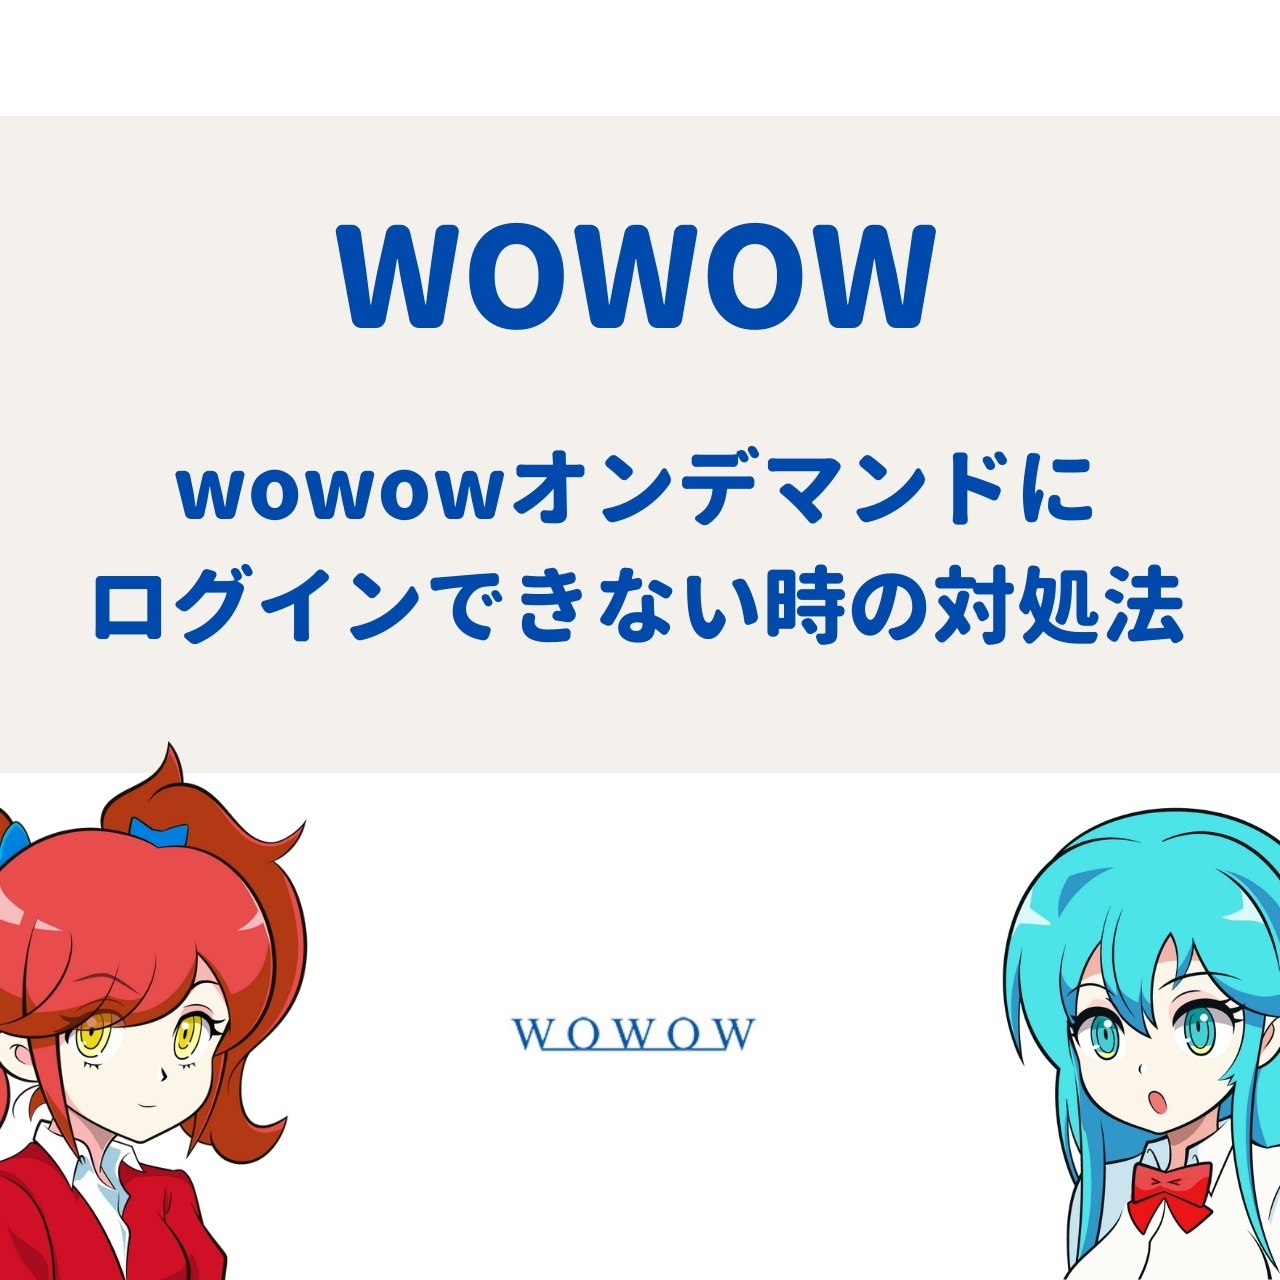 Wowowの無料放送とは 放送日や無料で視聴する方法を解説 アニメガホン